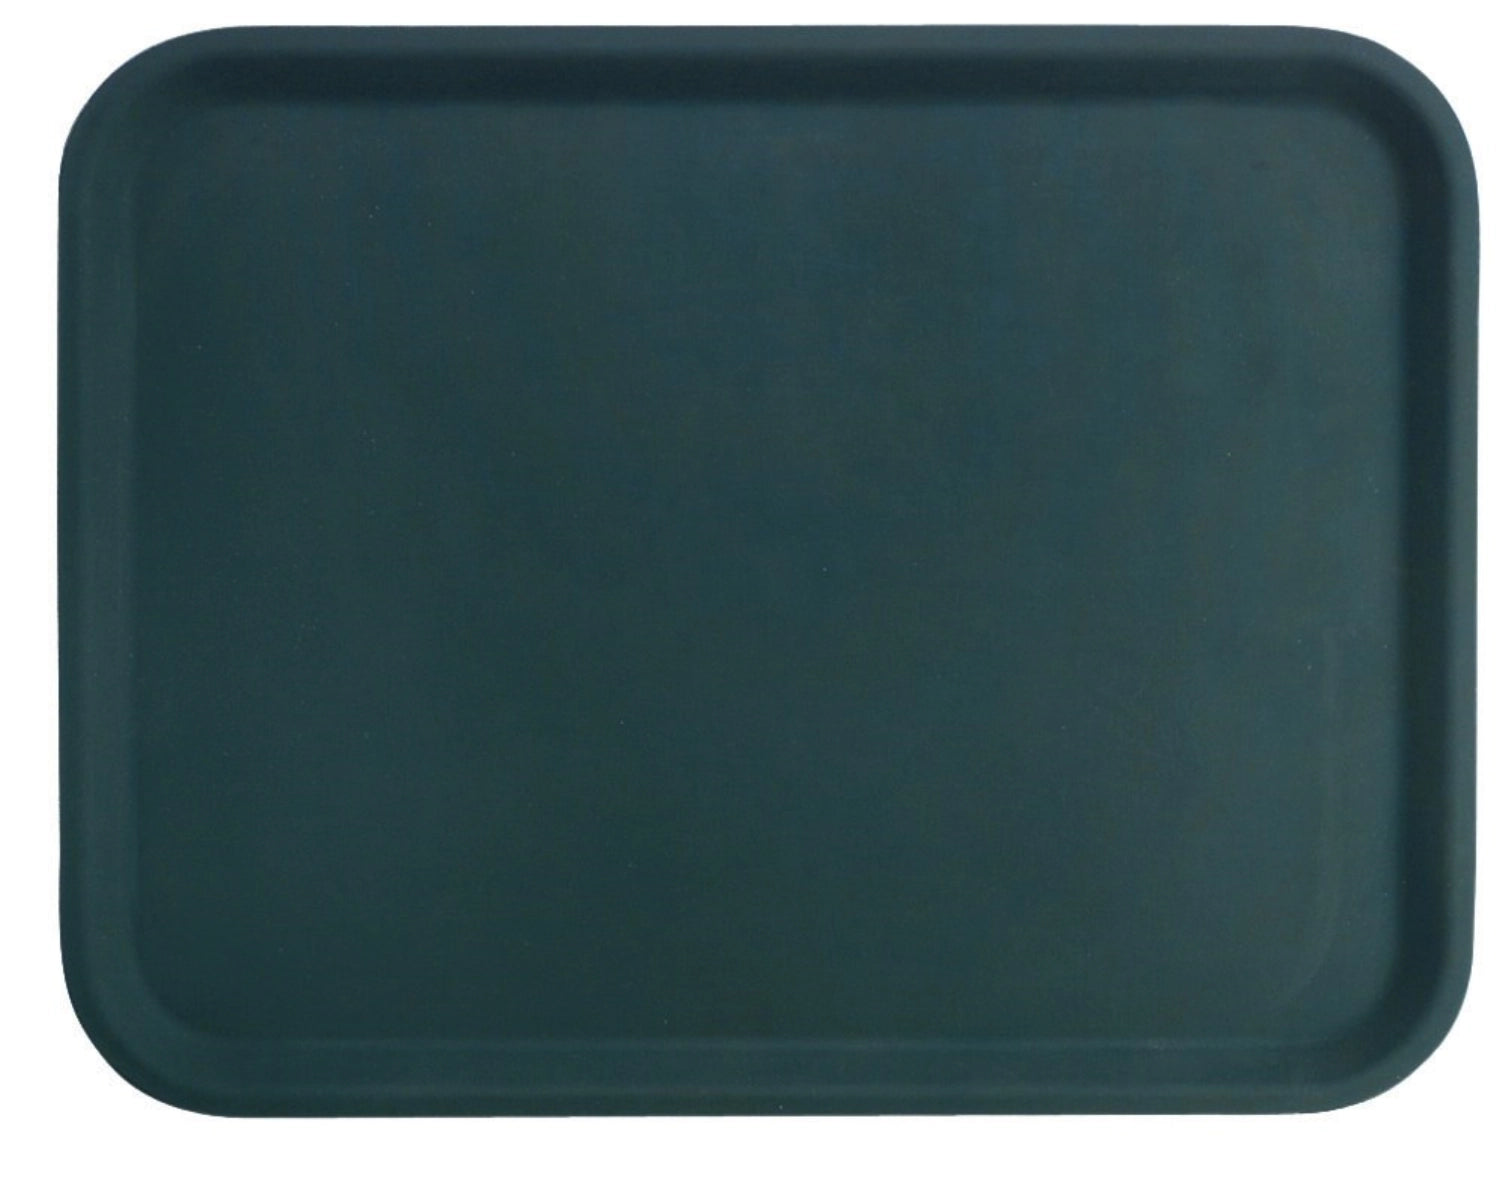 Tablett antirutschbeschichtet schwarz 20x28cm - KAQTU Design